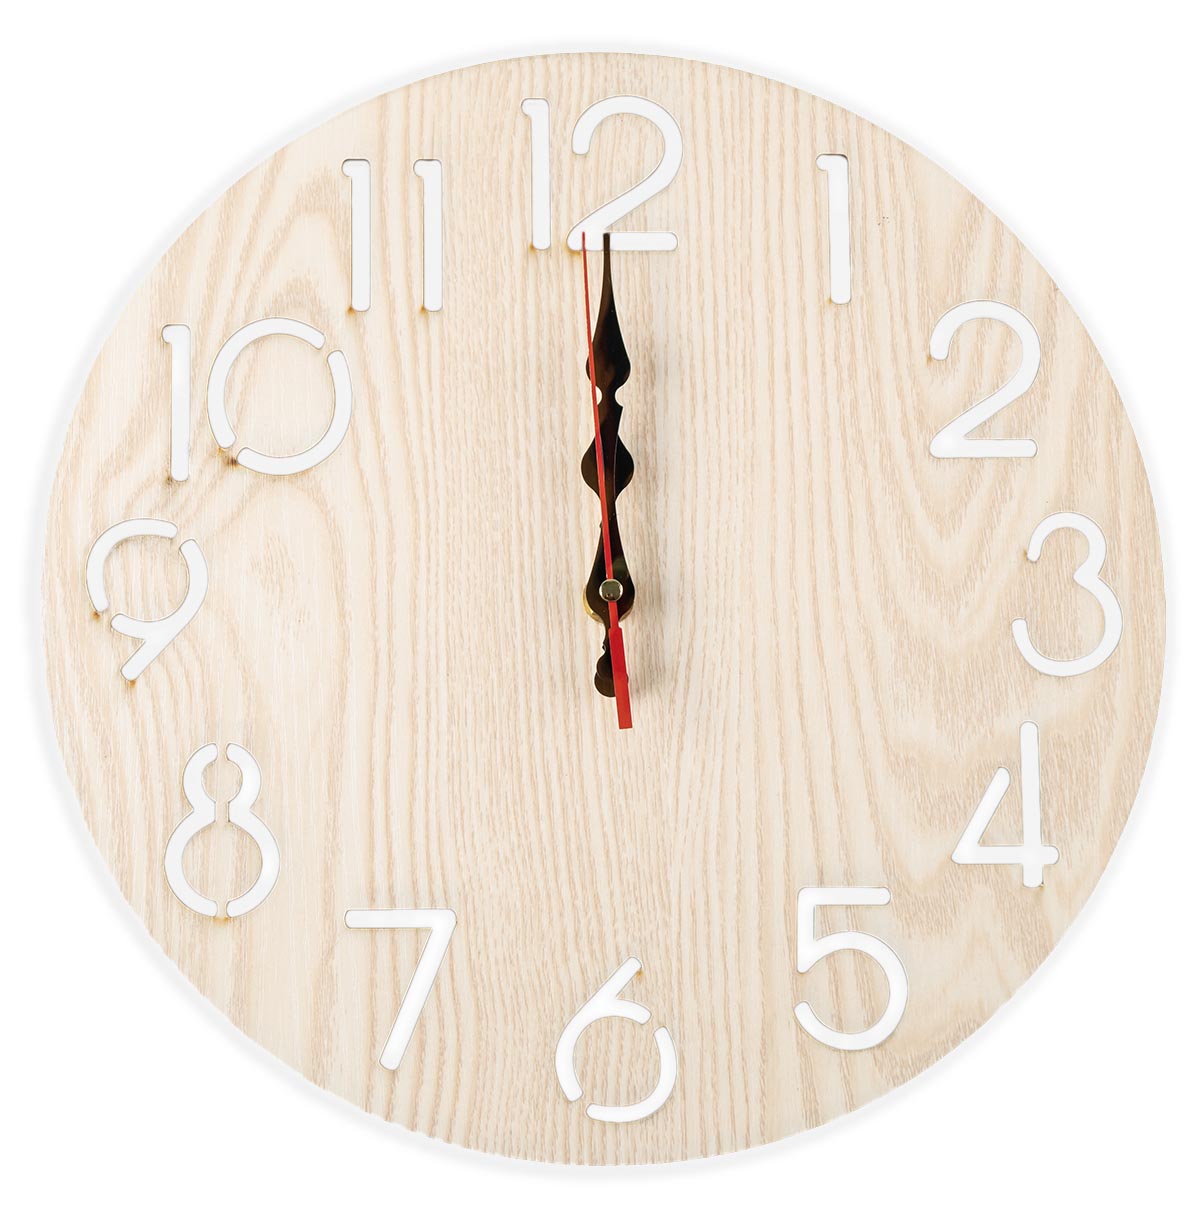 30cm Holz Wanduhr #2 Analog Küchenuhr Natur Uhr Wohnzimmeruhr Birkenholz